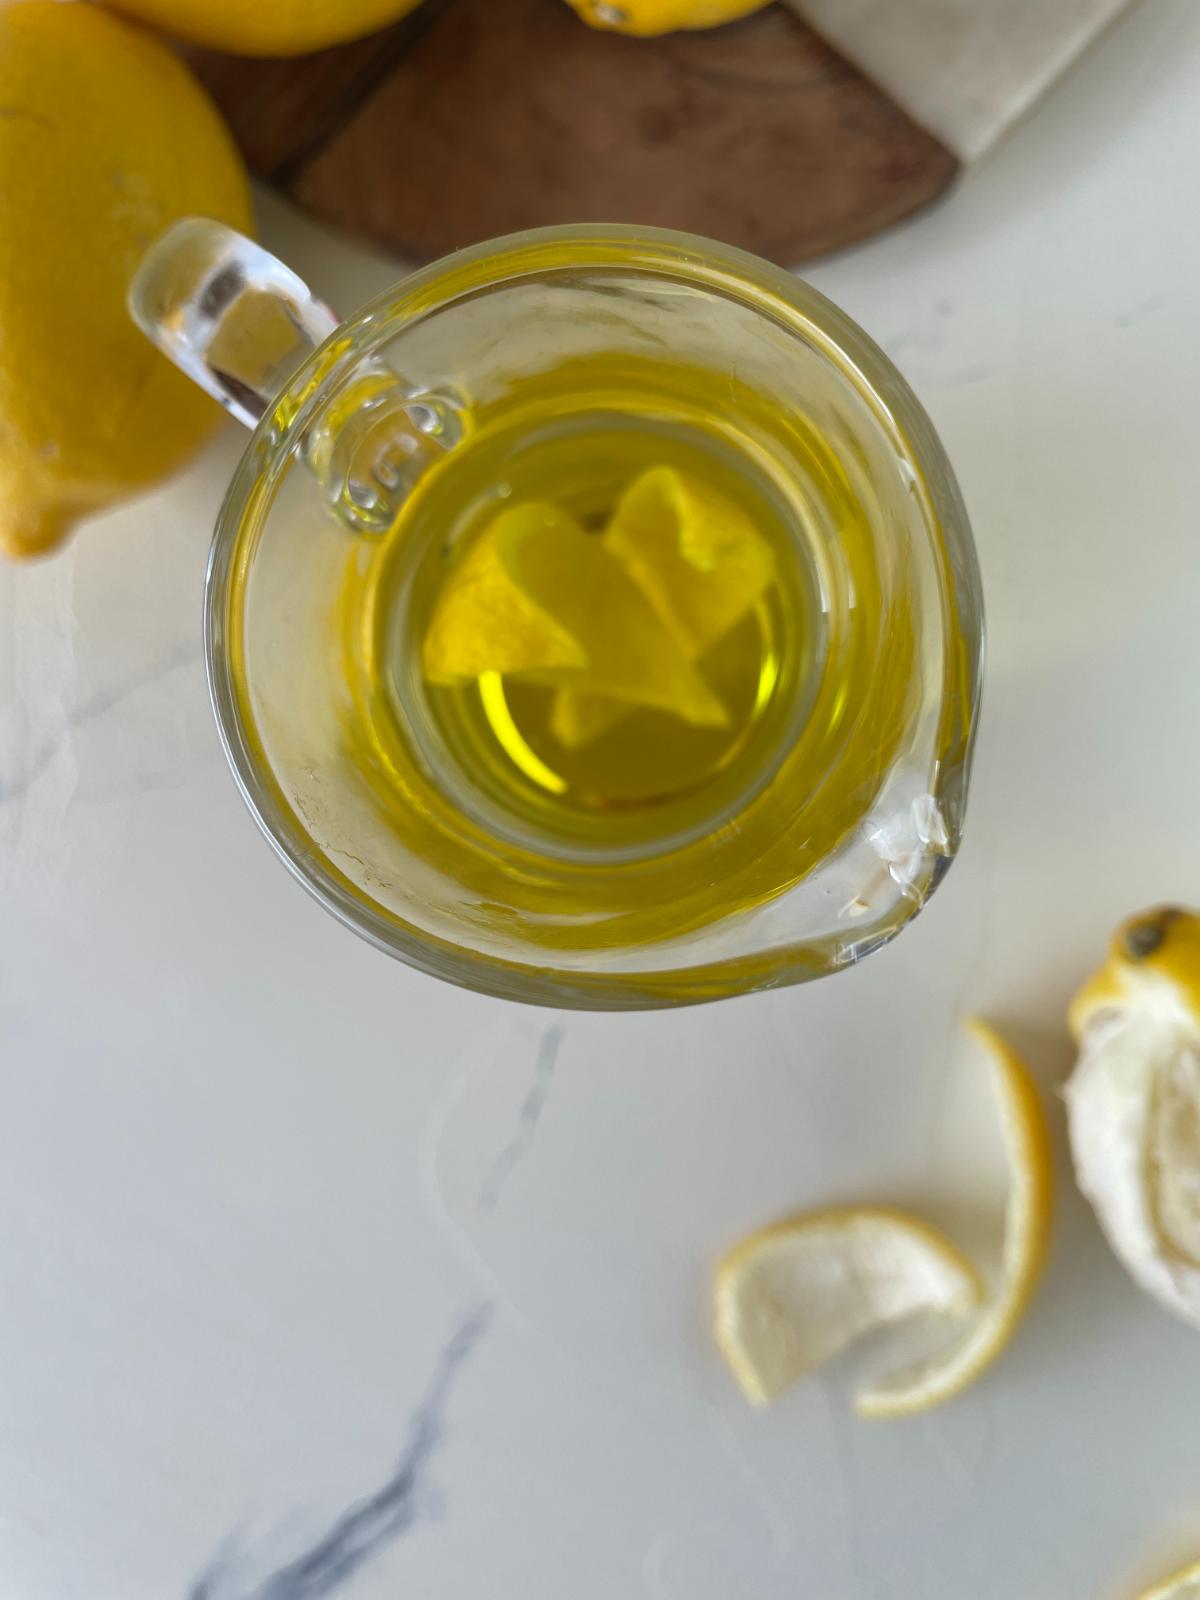  lemon infused olive oil in a jar